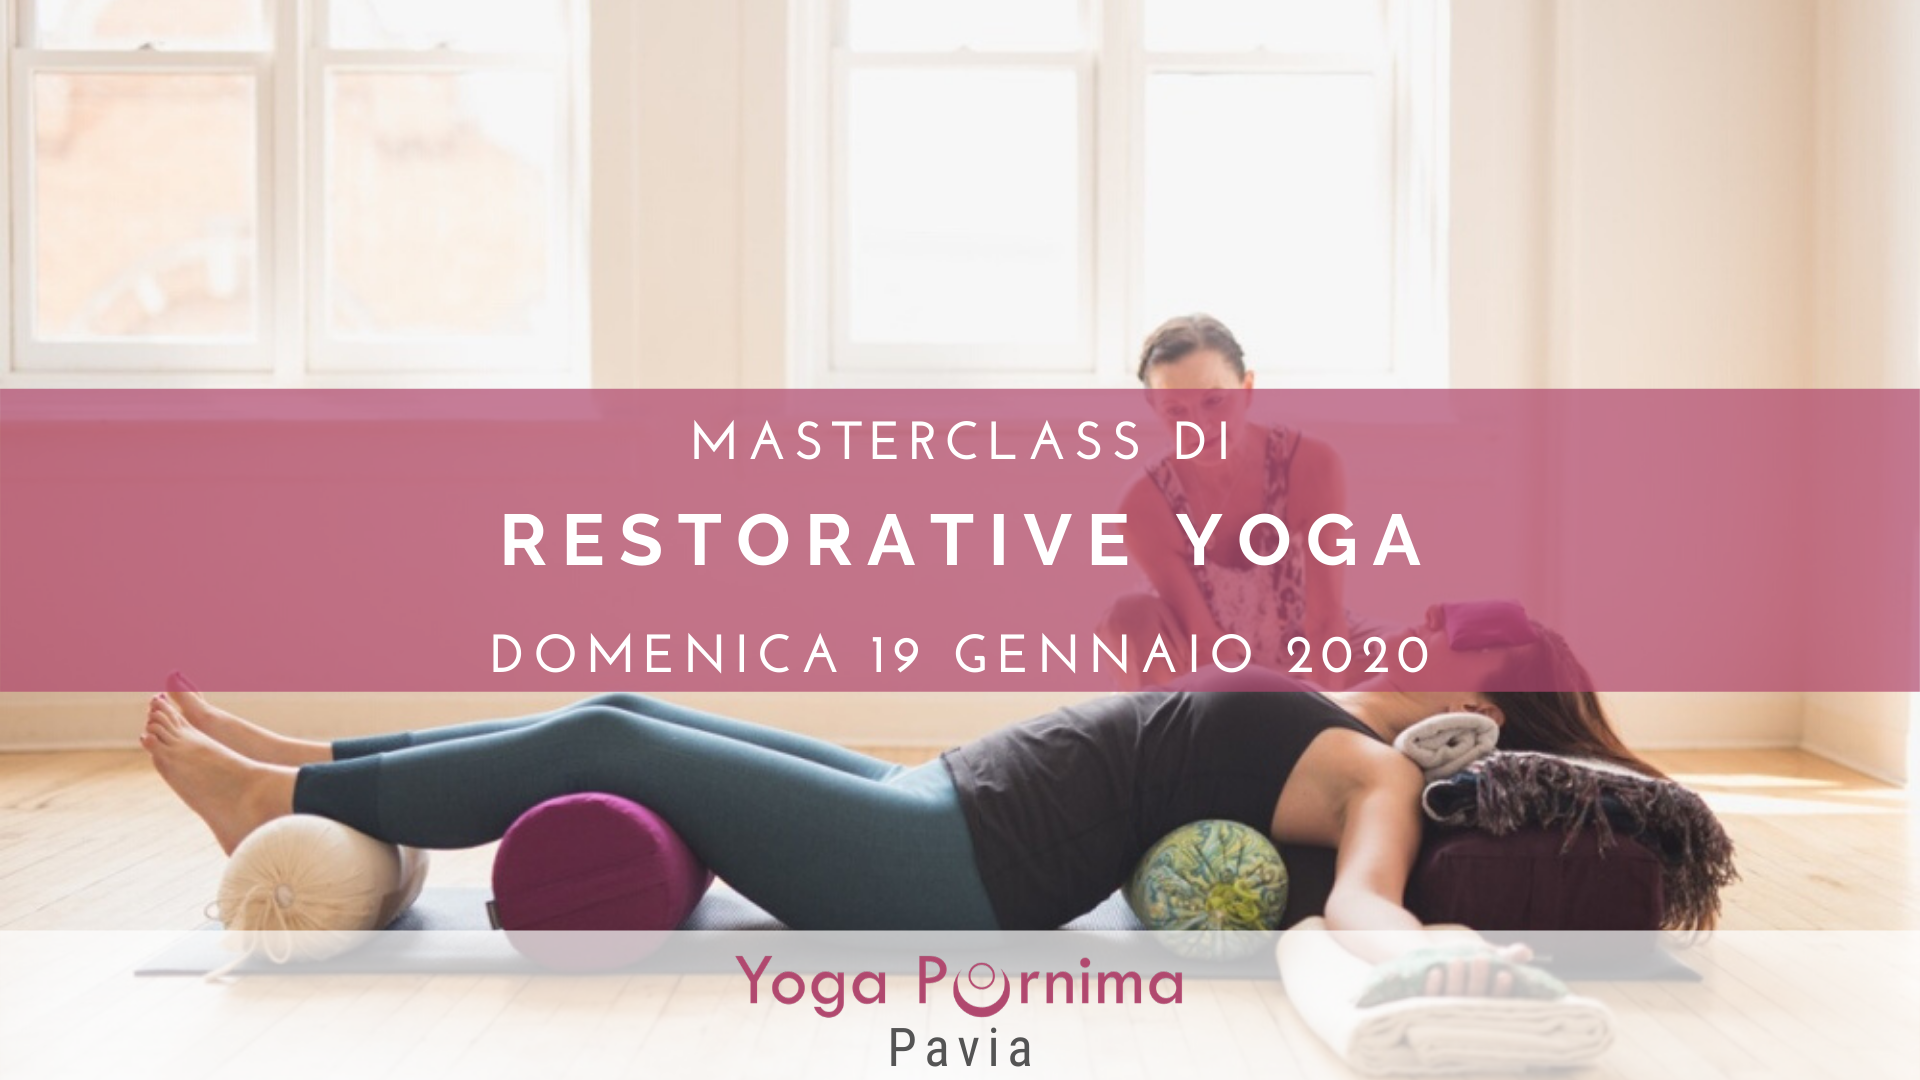 19 gennaio: masterclass di Restorative Yoga, lo yoga che rigenera